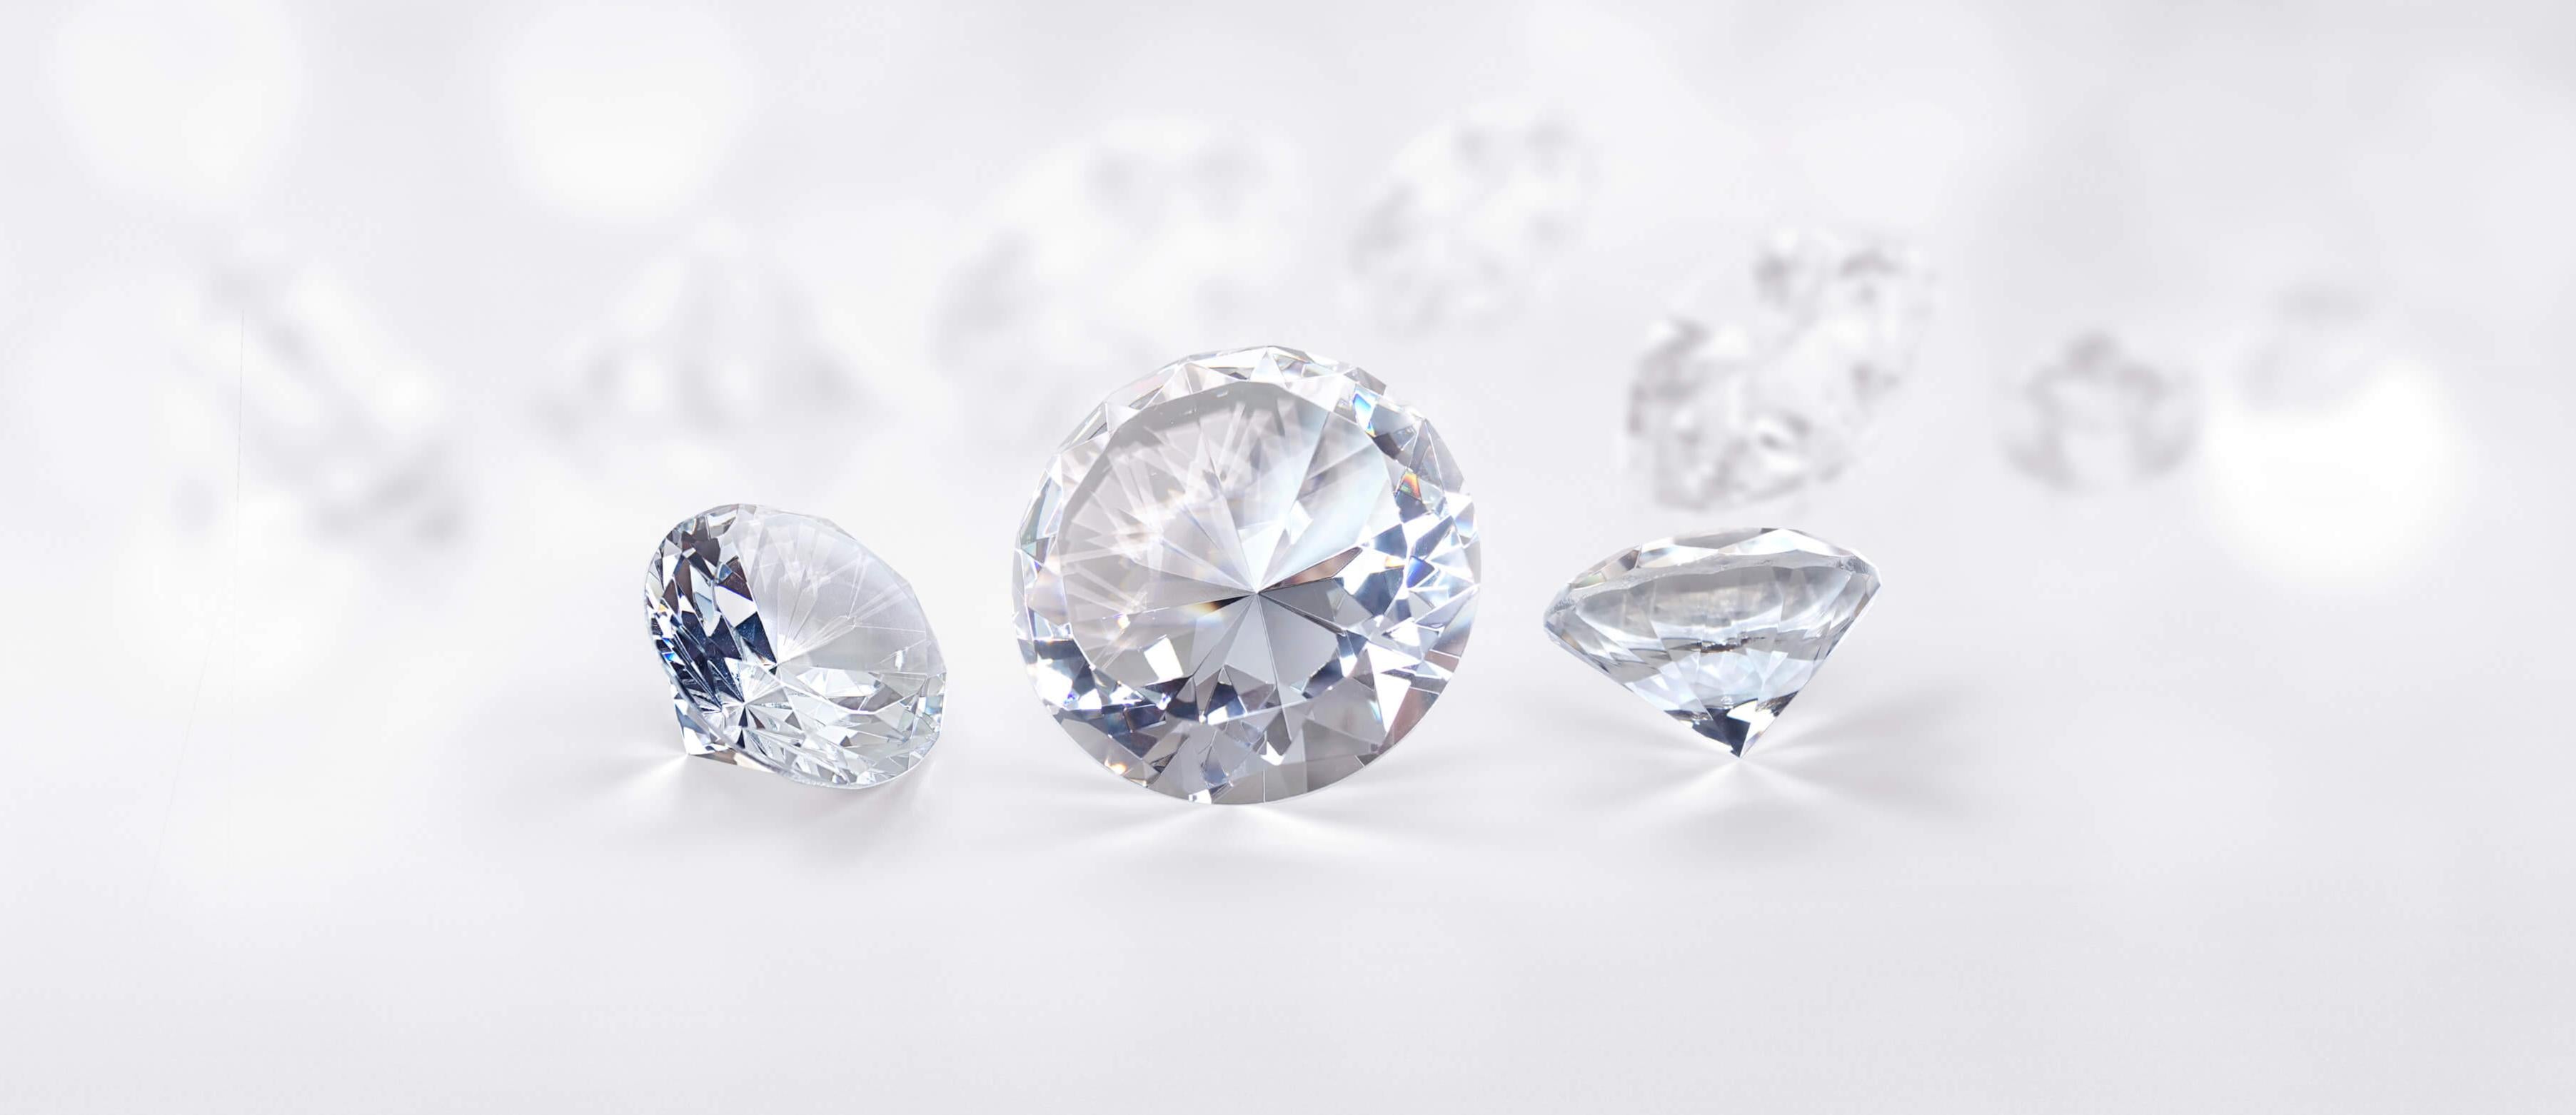 Three Moissanite diamonds on a white background